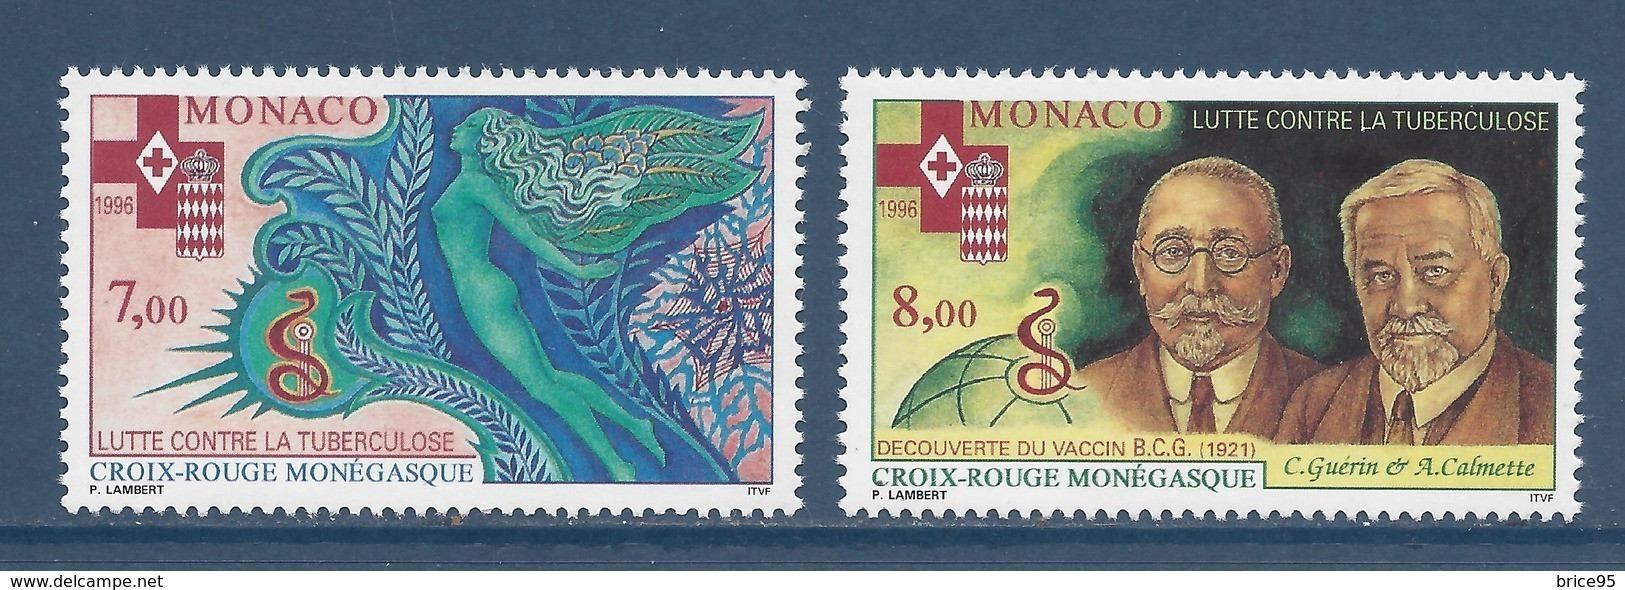 Monaco - YT N° 2063 Et 2064 ** - Neuf Sans Charnière - 1996 - Neufs